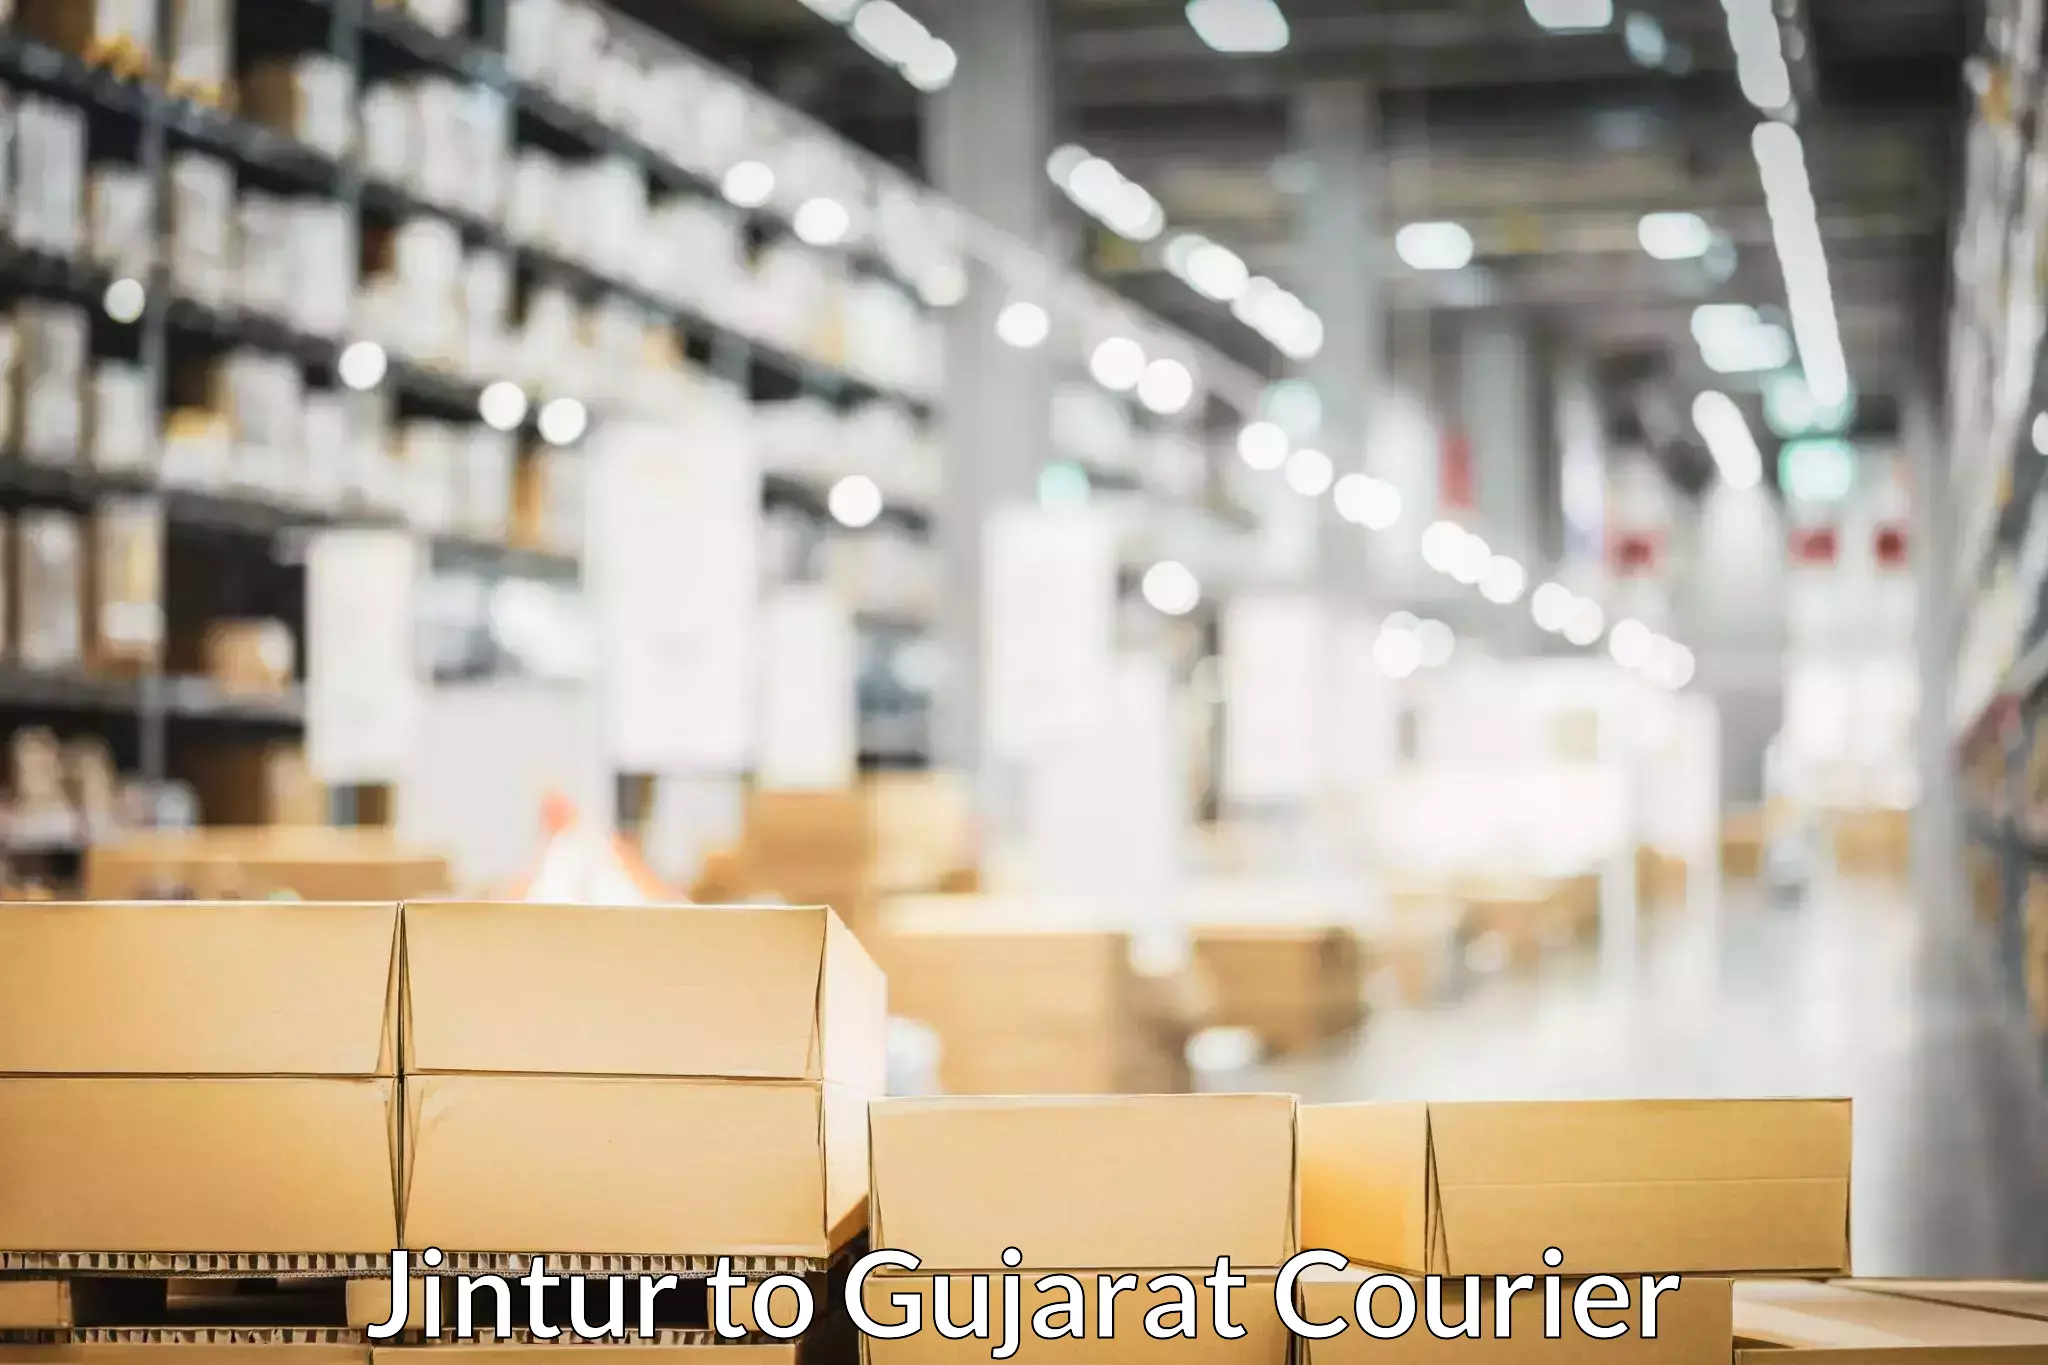 Furniture delivery service Jintur to Sabarkantha